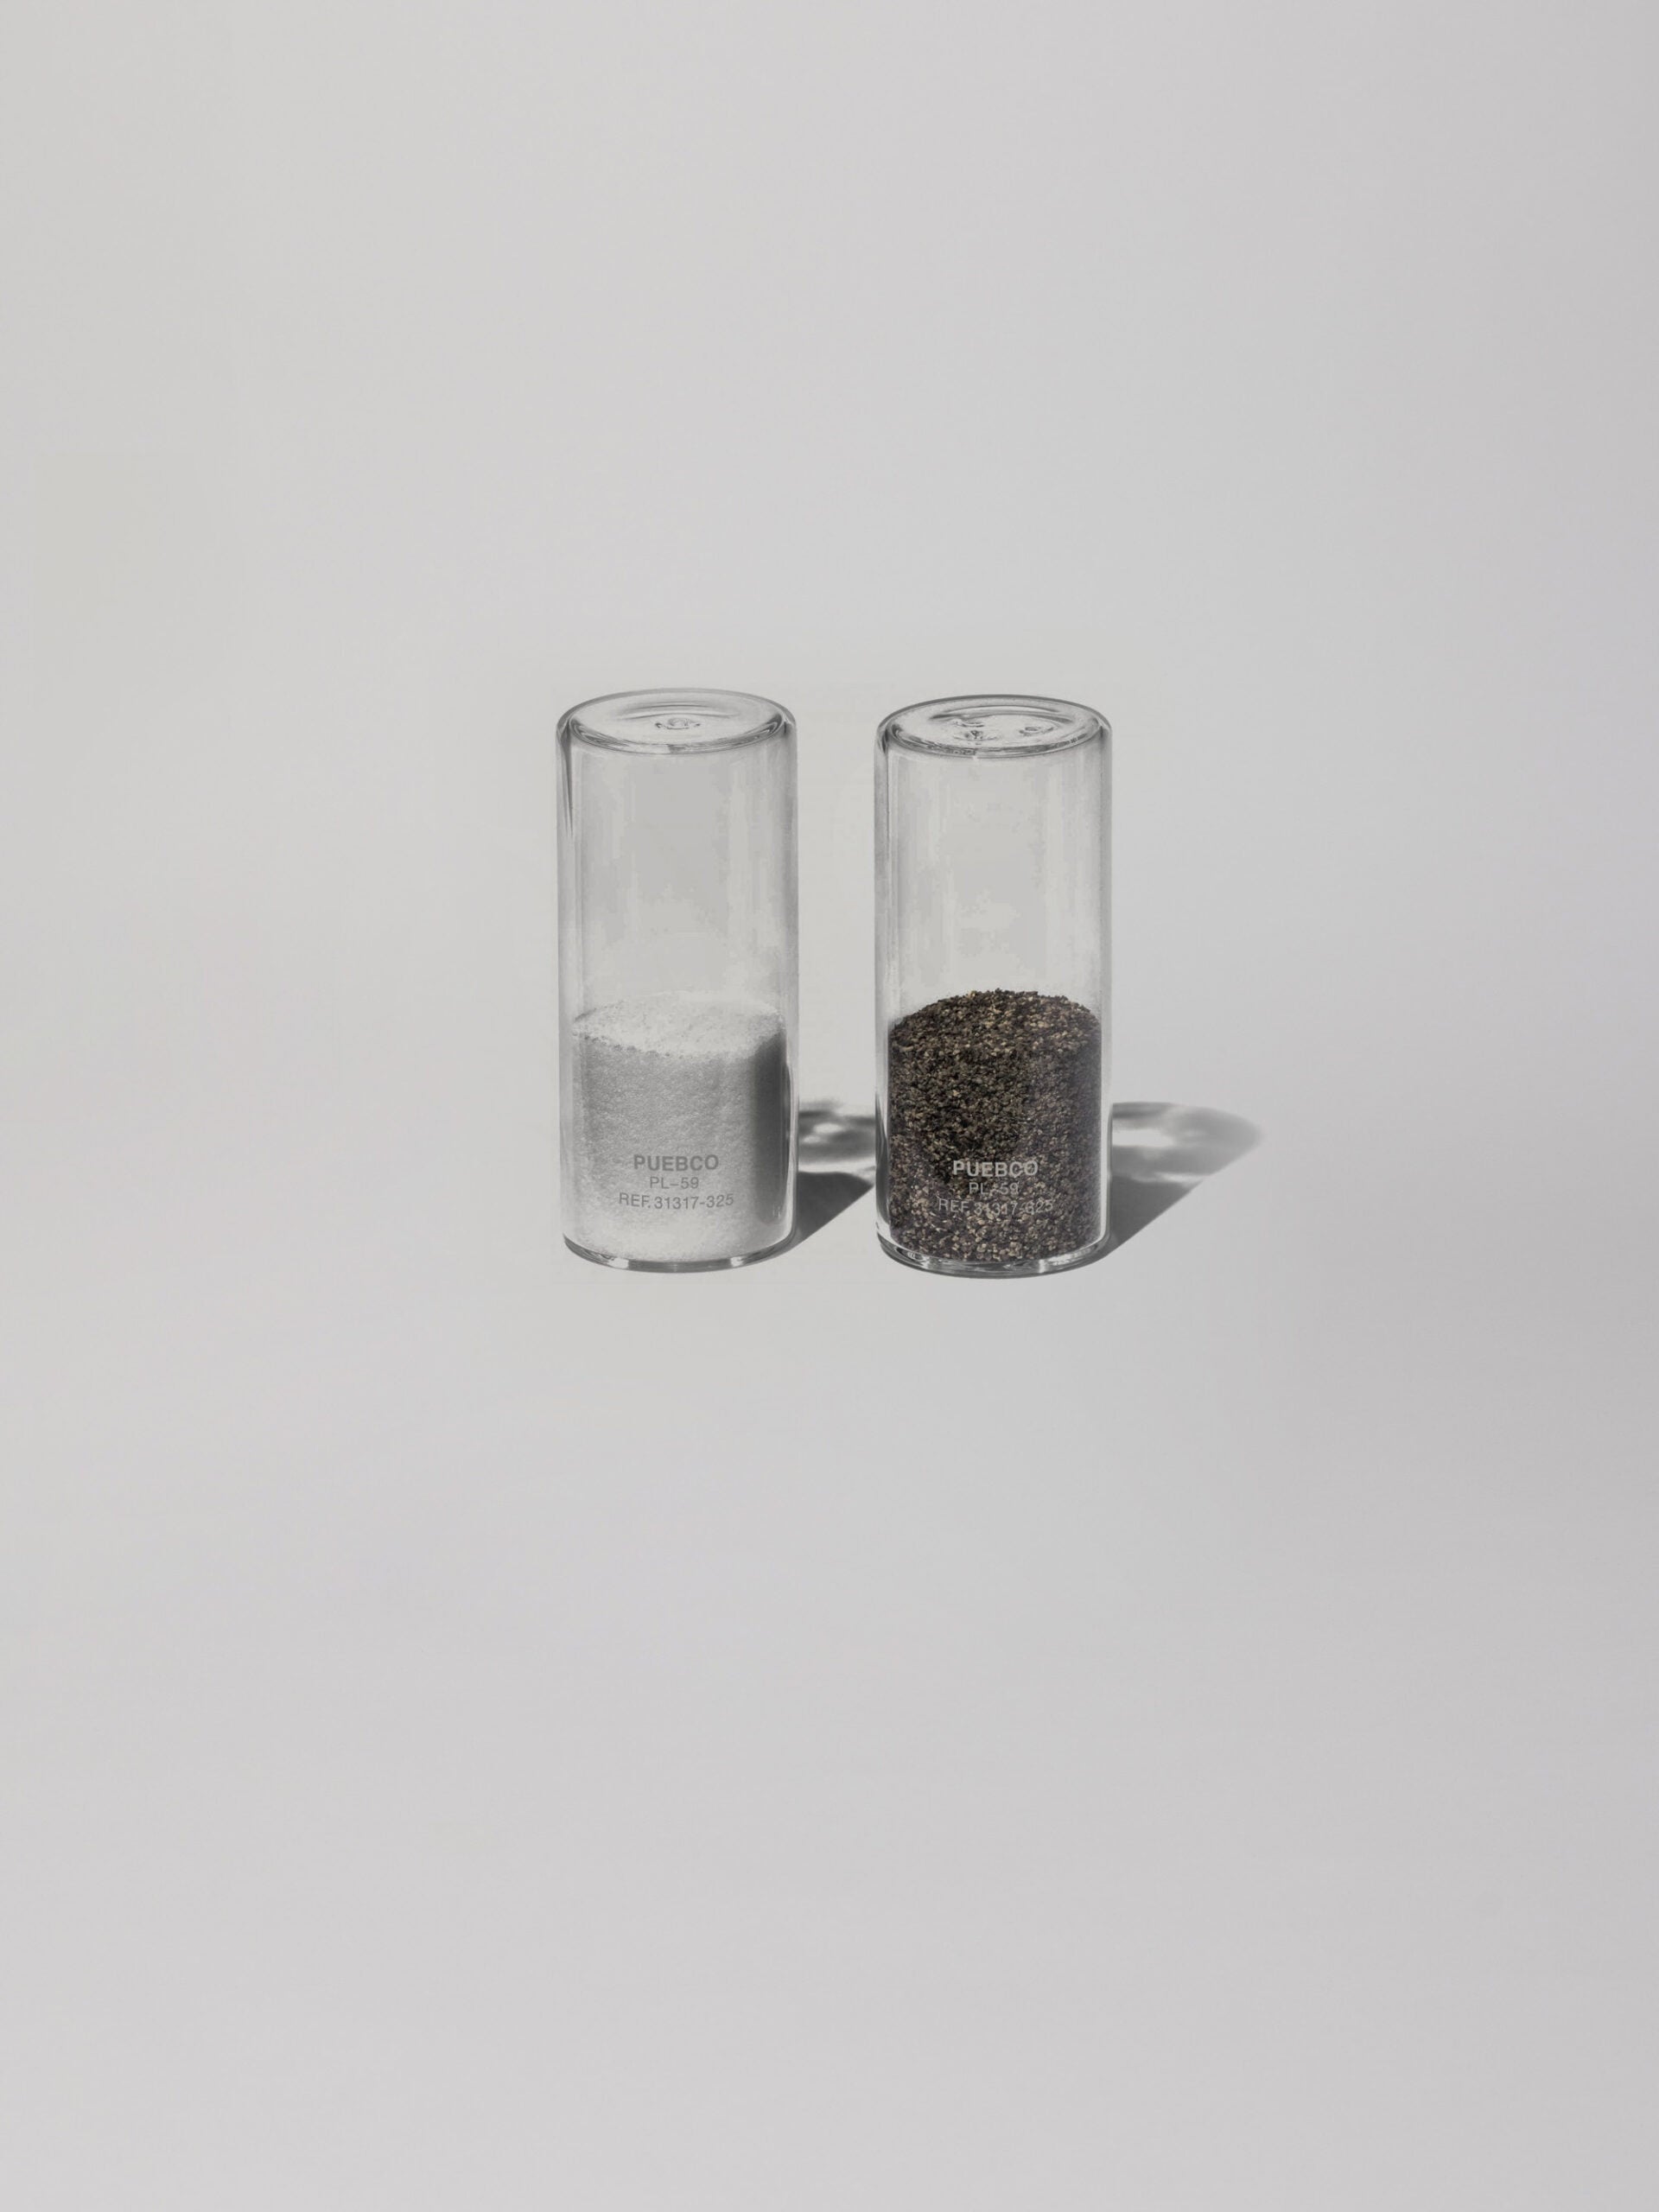 מלחיה ופלפליה רבע מלאים עשוי זכוכית עומדים על רקע אפור בהיר 